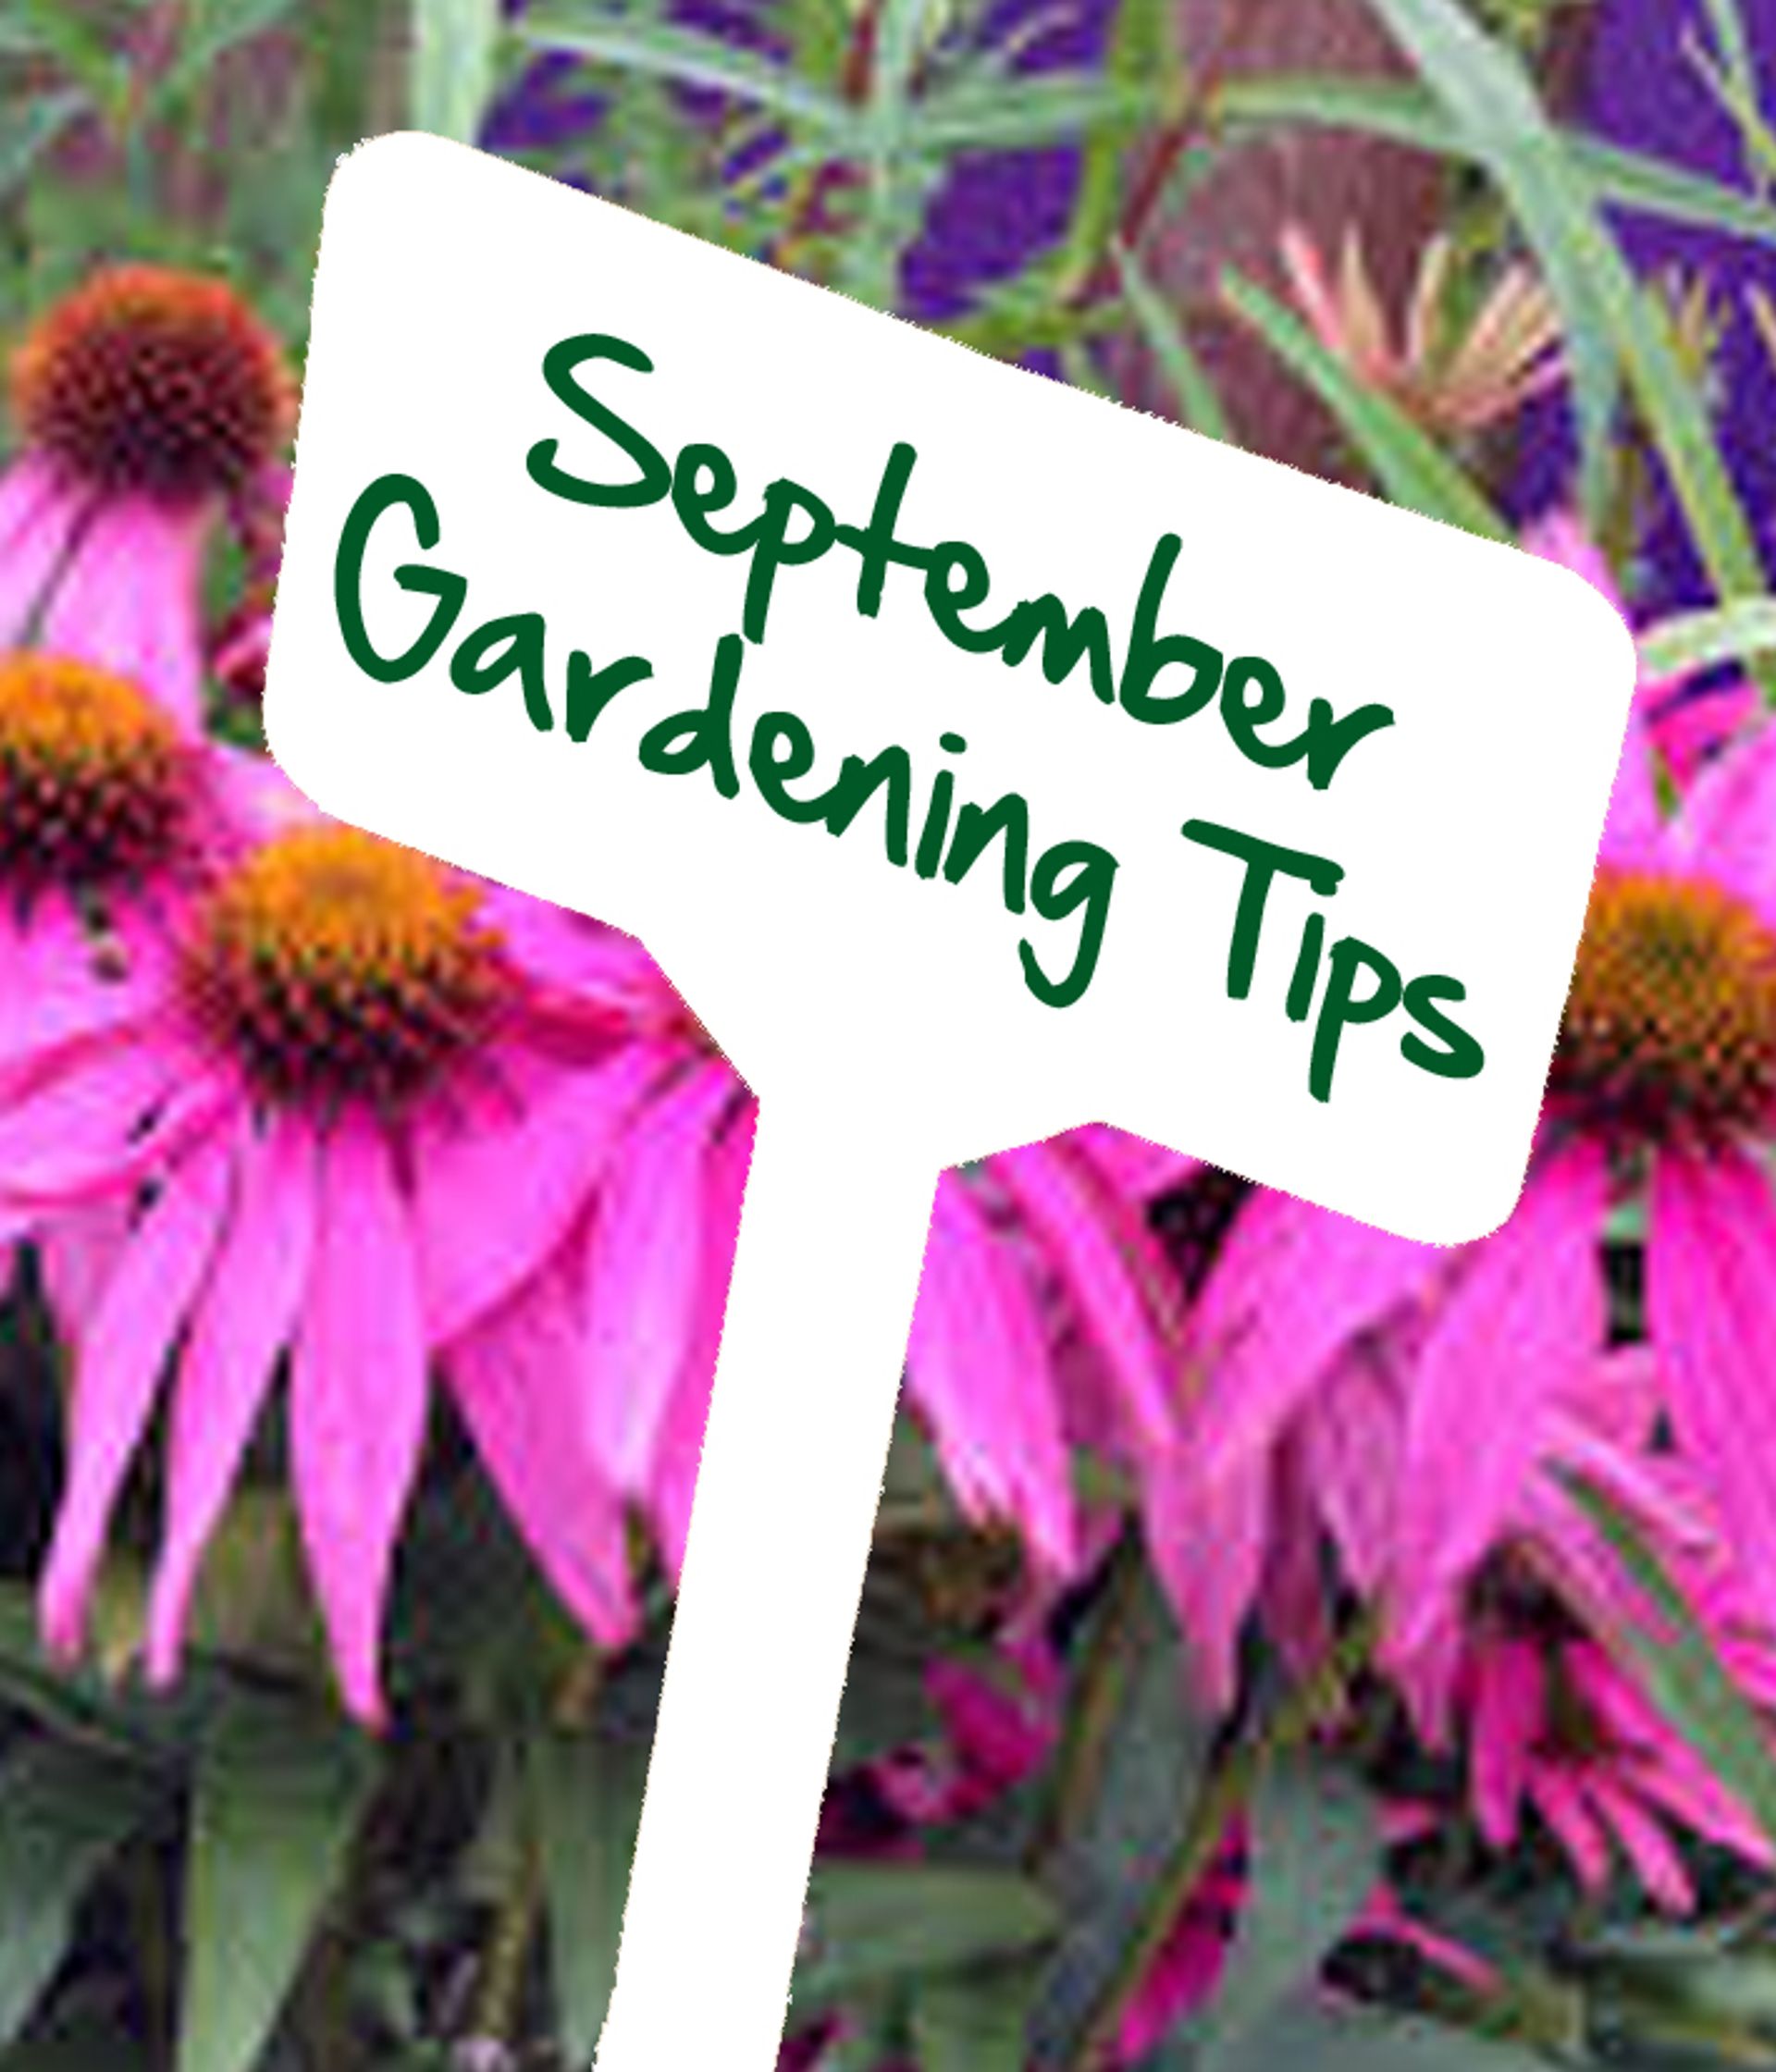 September gardening tips